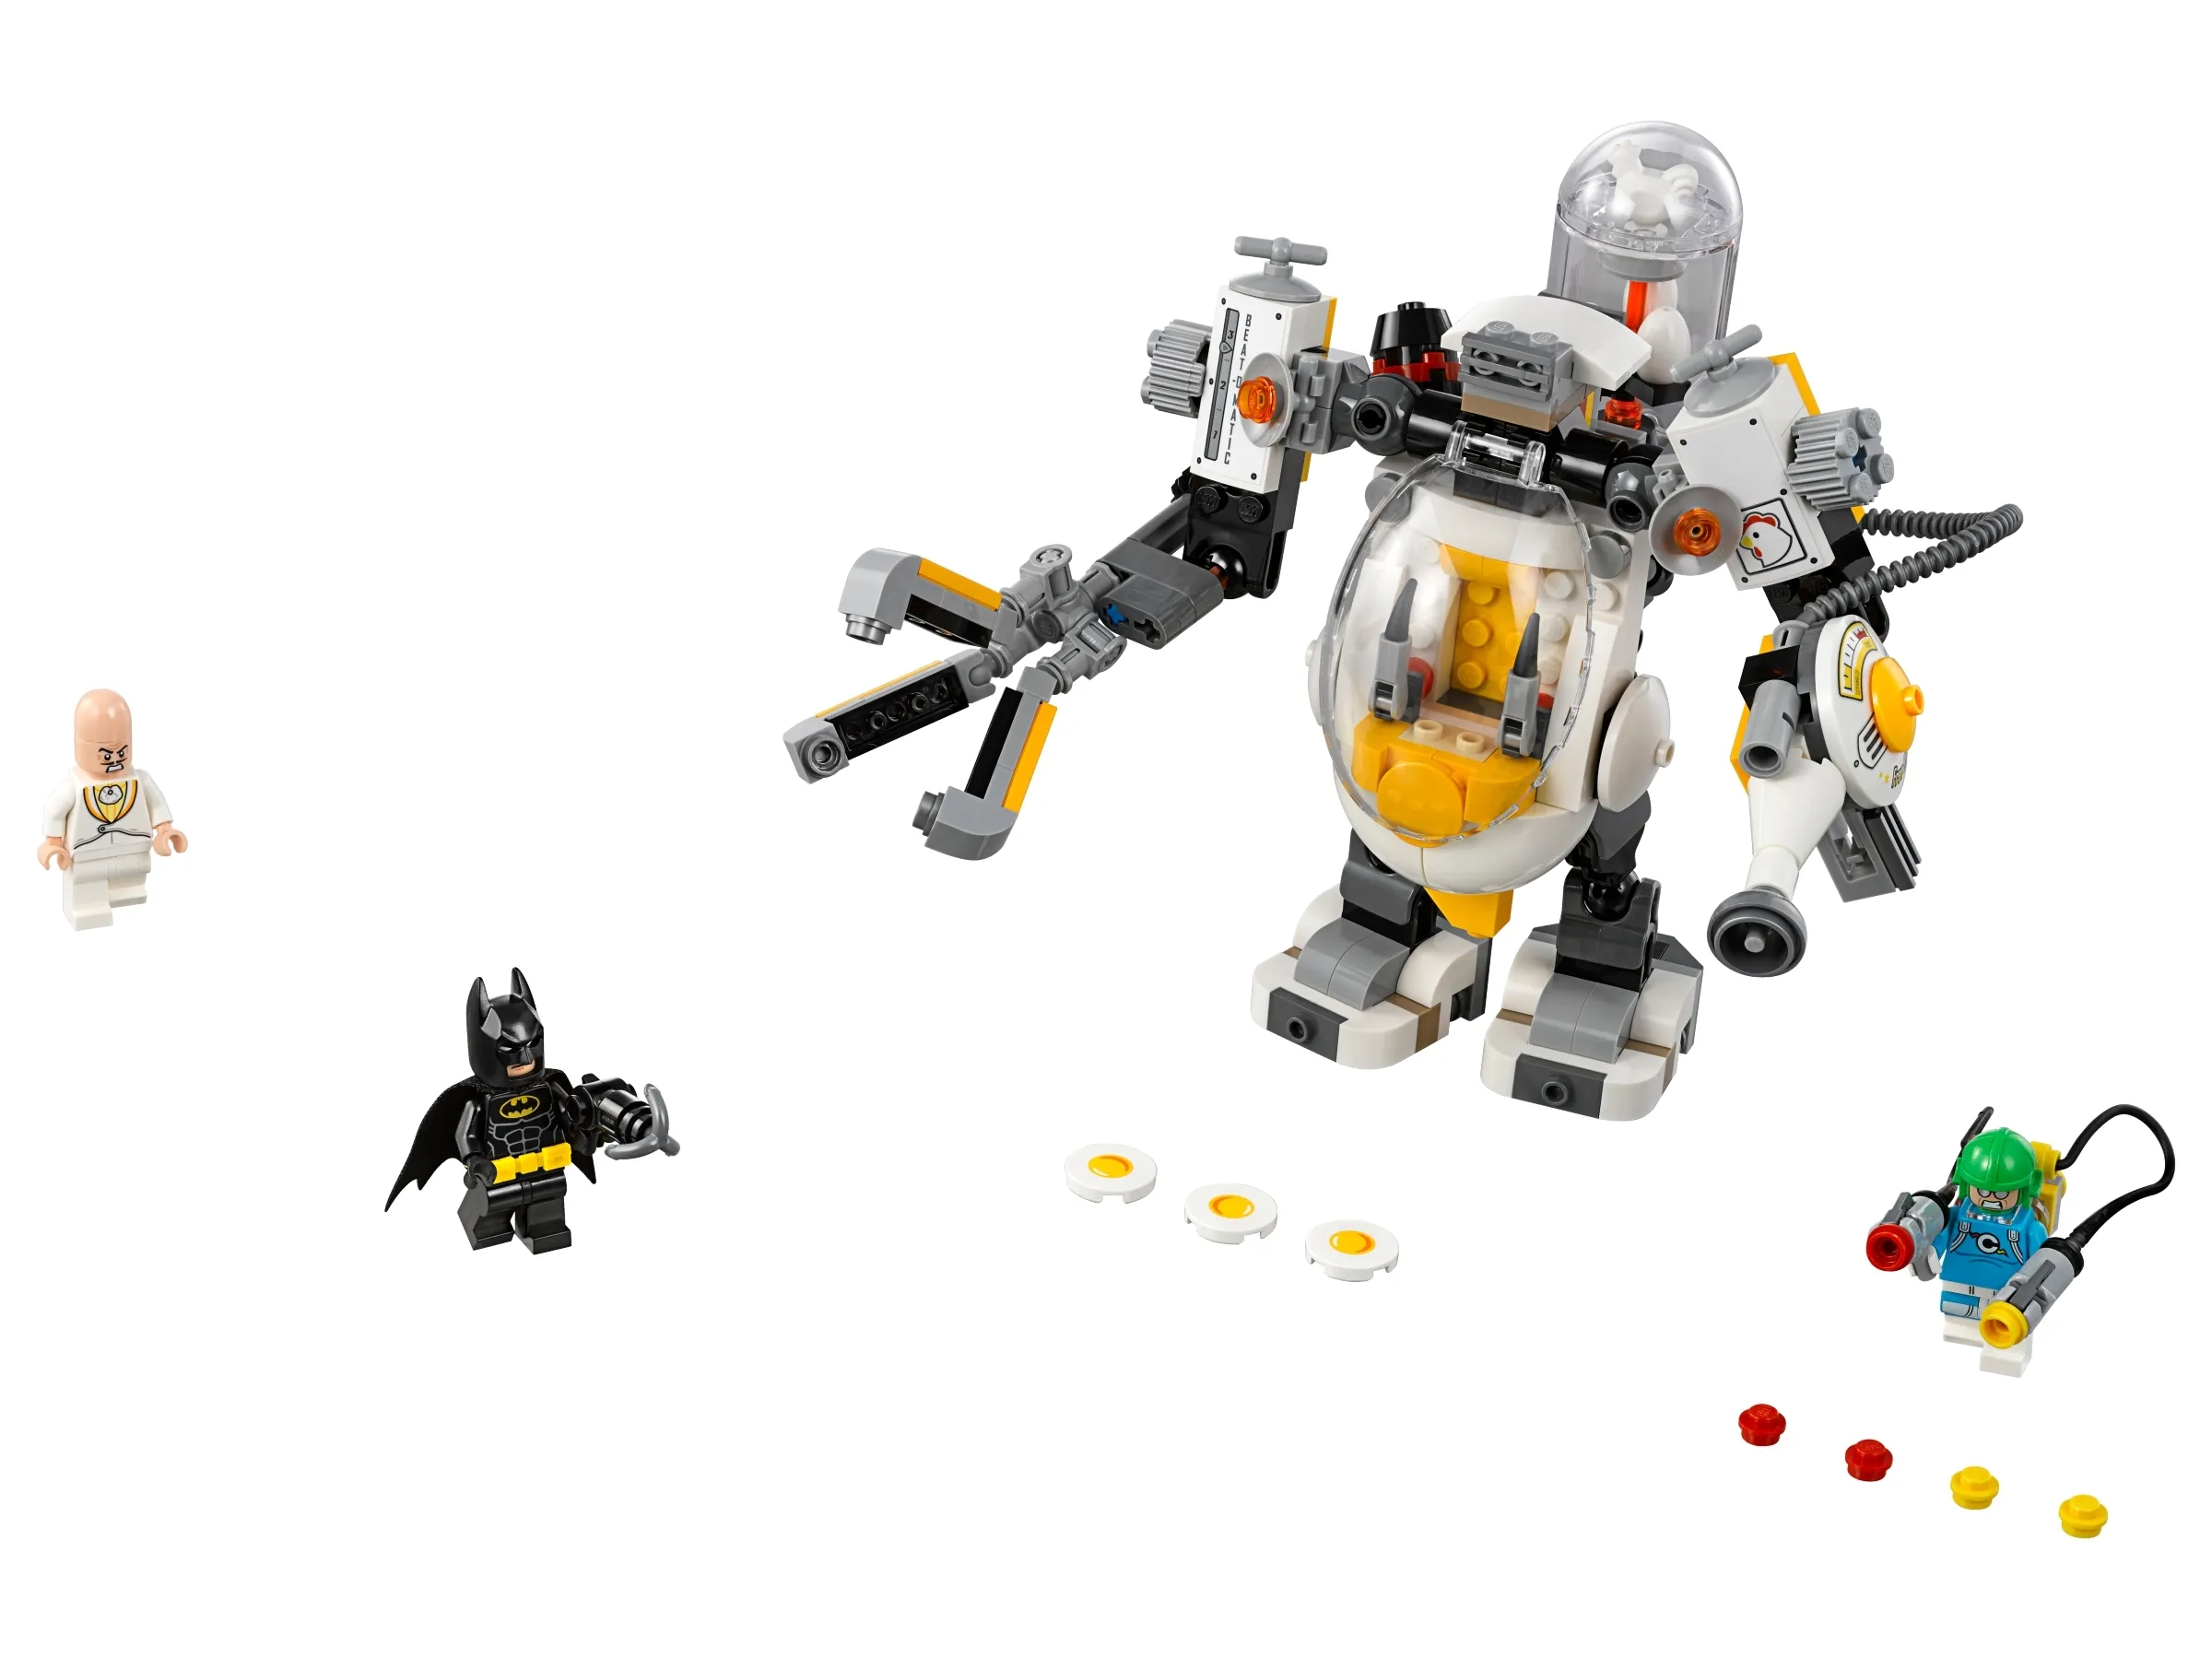 LEGO THE LEGO BATMAN MOVIE Egghead Mech Food Fight